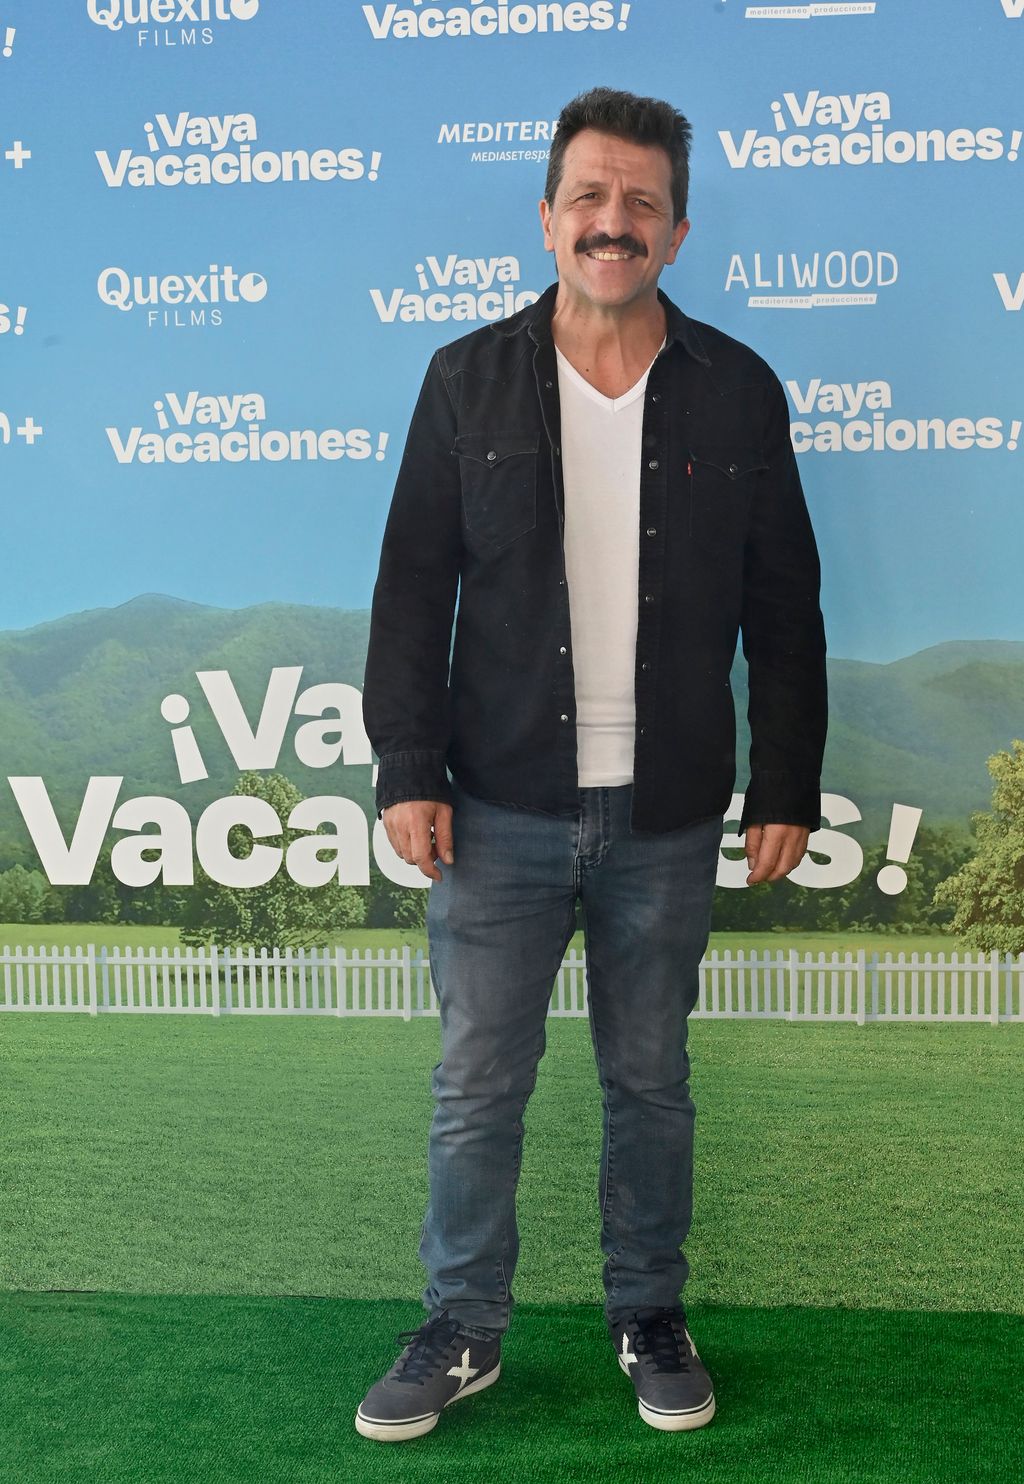 La premier de '¡Vaya vacaciones!' se llena de actores famosos y presentadores de Mediaset